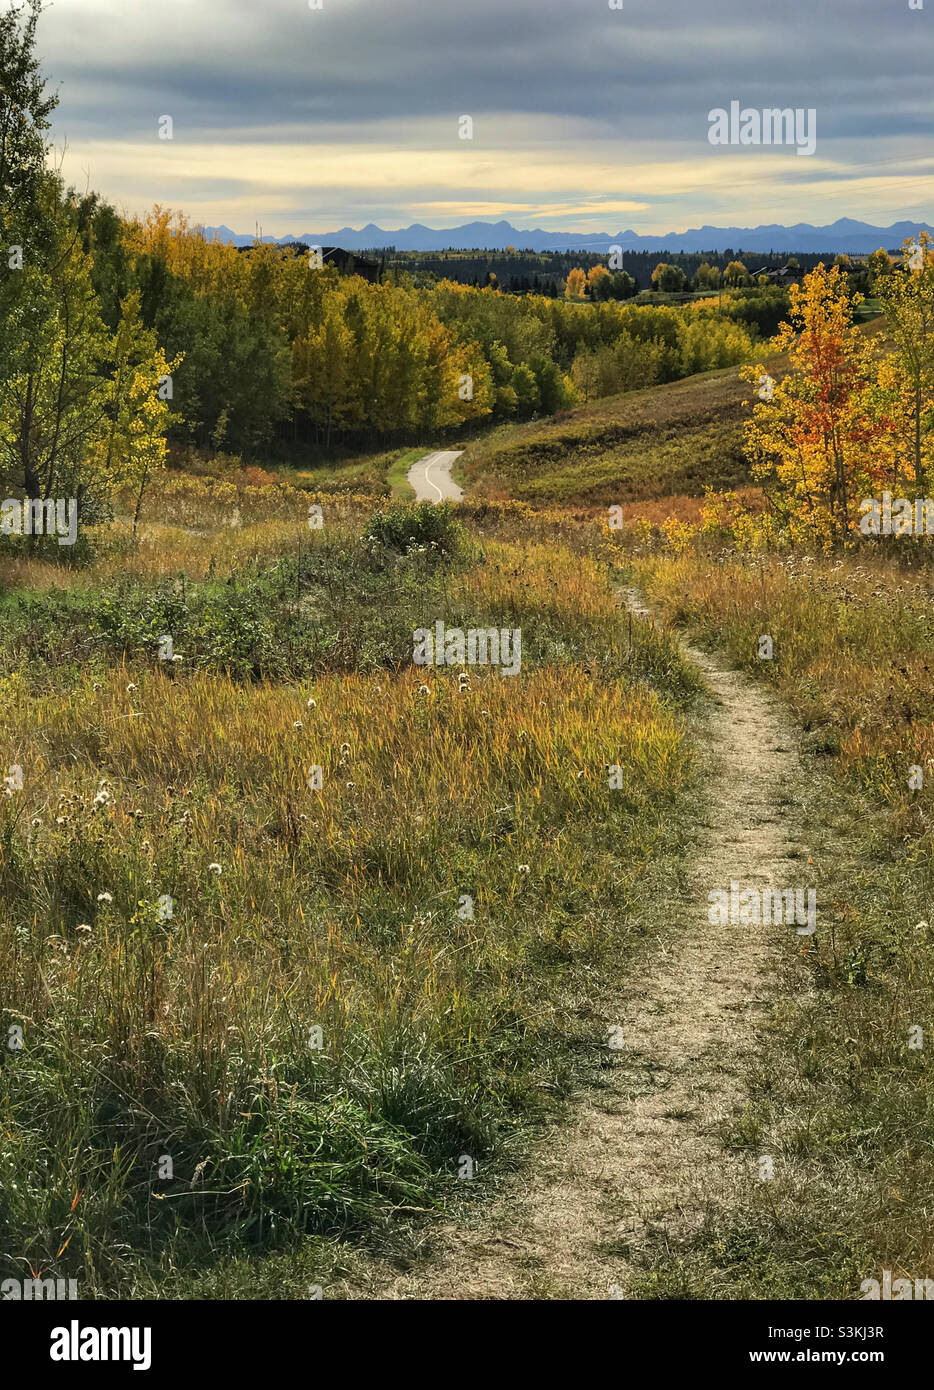 Sentier menant vers une coulee, entouré d'arbres et de feuillages d'automne.En regardant vers les montagnes Rocheuses canadiennes lors d'une journée d'automne nuageuse à Calgary, Alberta, Canada. Banque D'Images